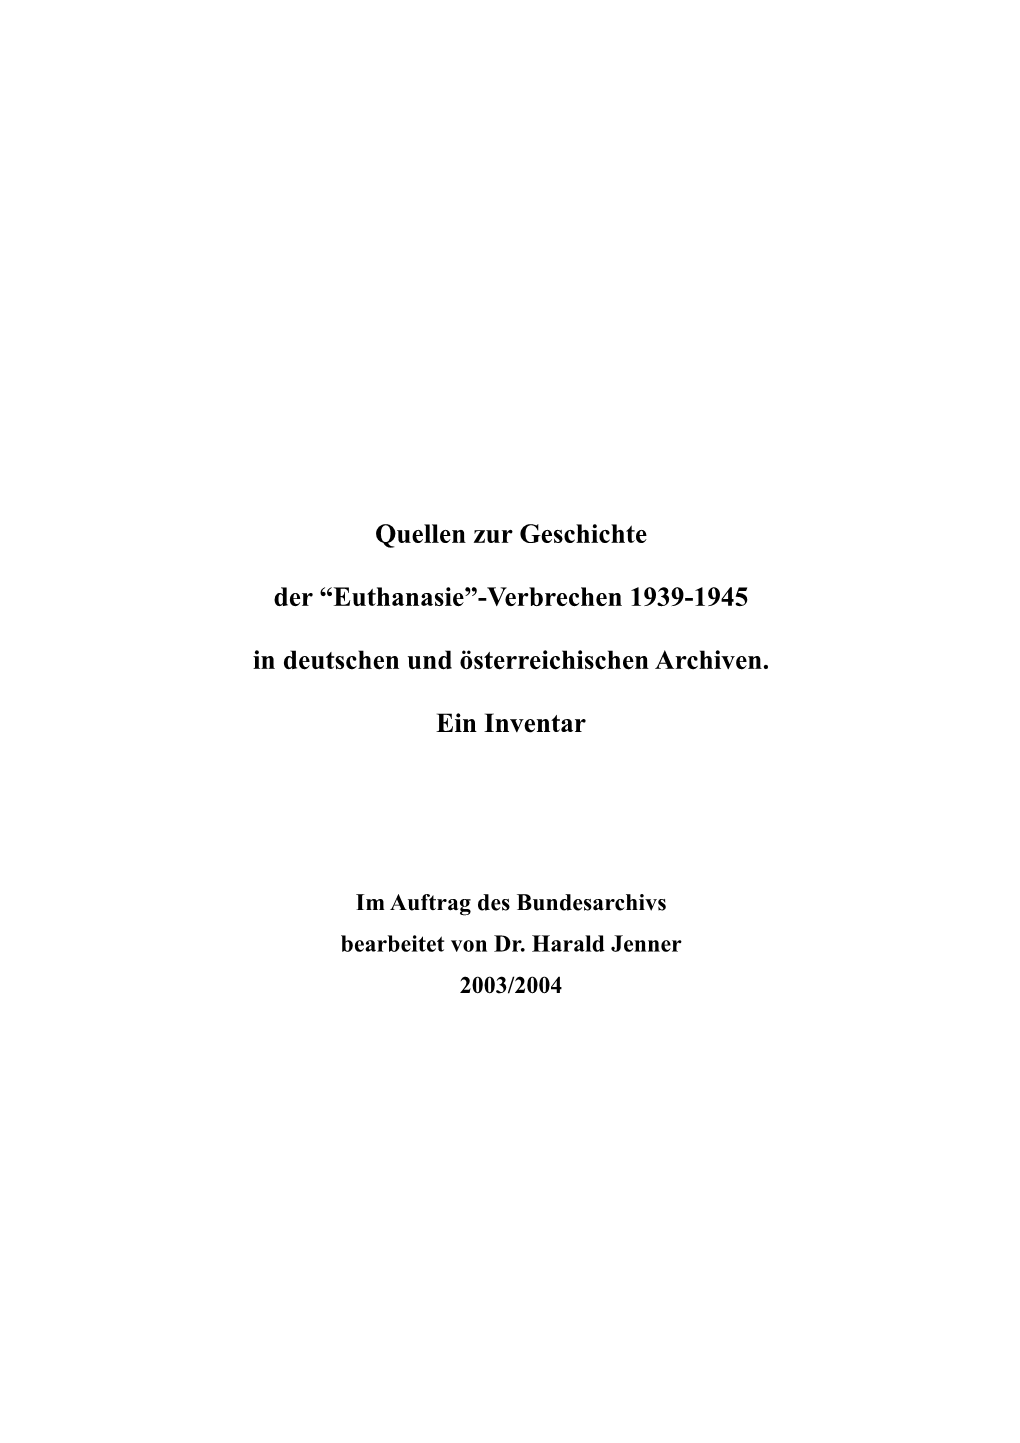 Euthanasie”-Verbrechen 1939-1945 in Deutschen Und Österreichischen Archiven